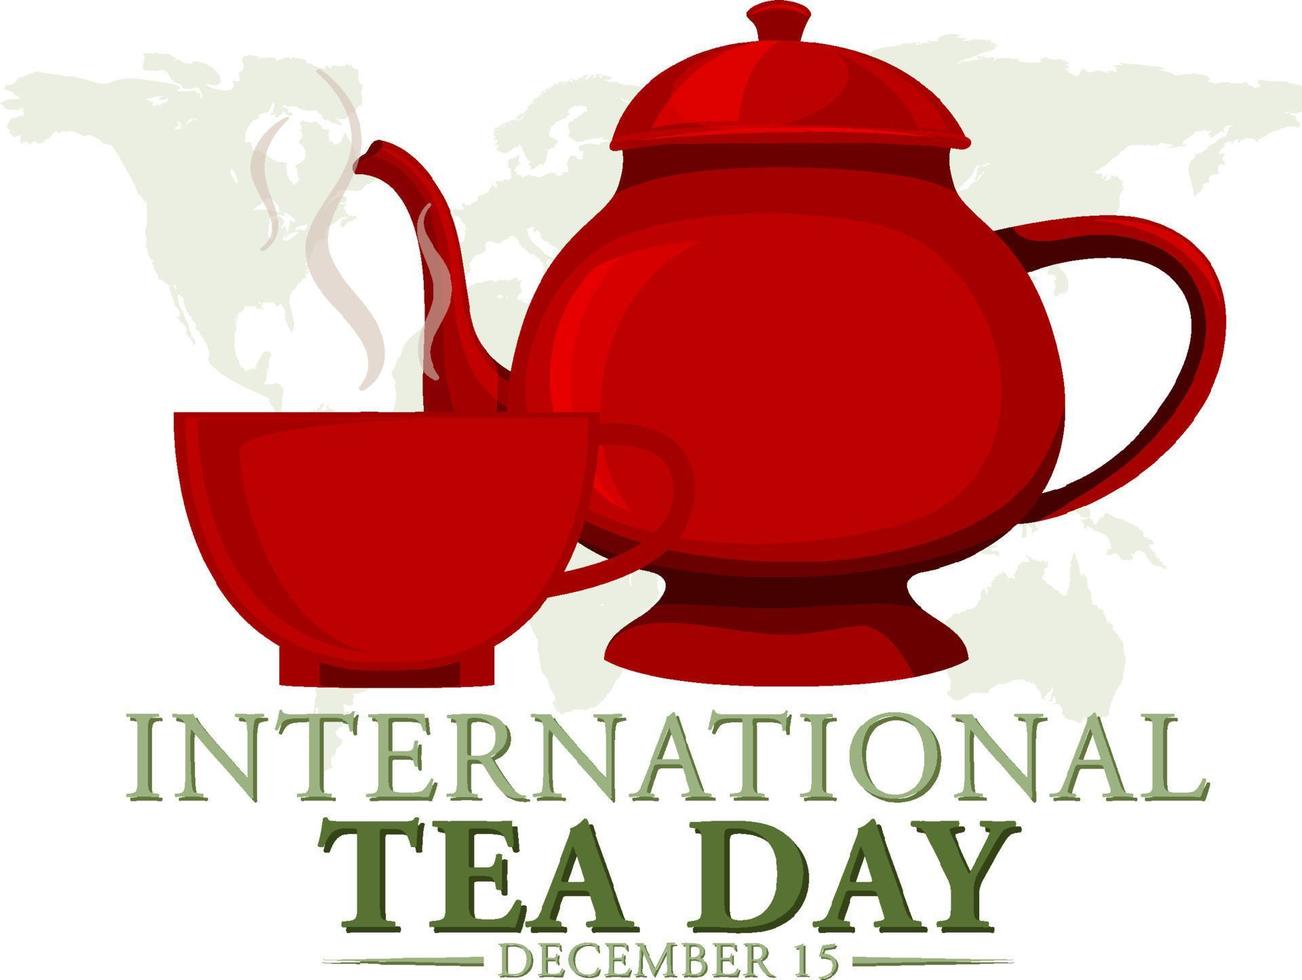 Textbanner-Design für den internationalen Teetag vektor